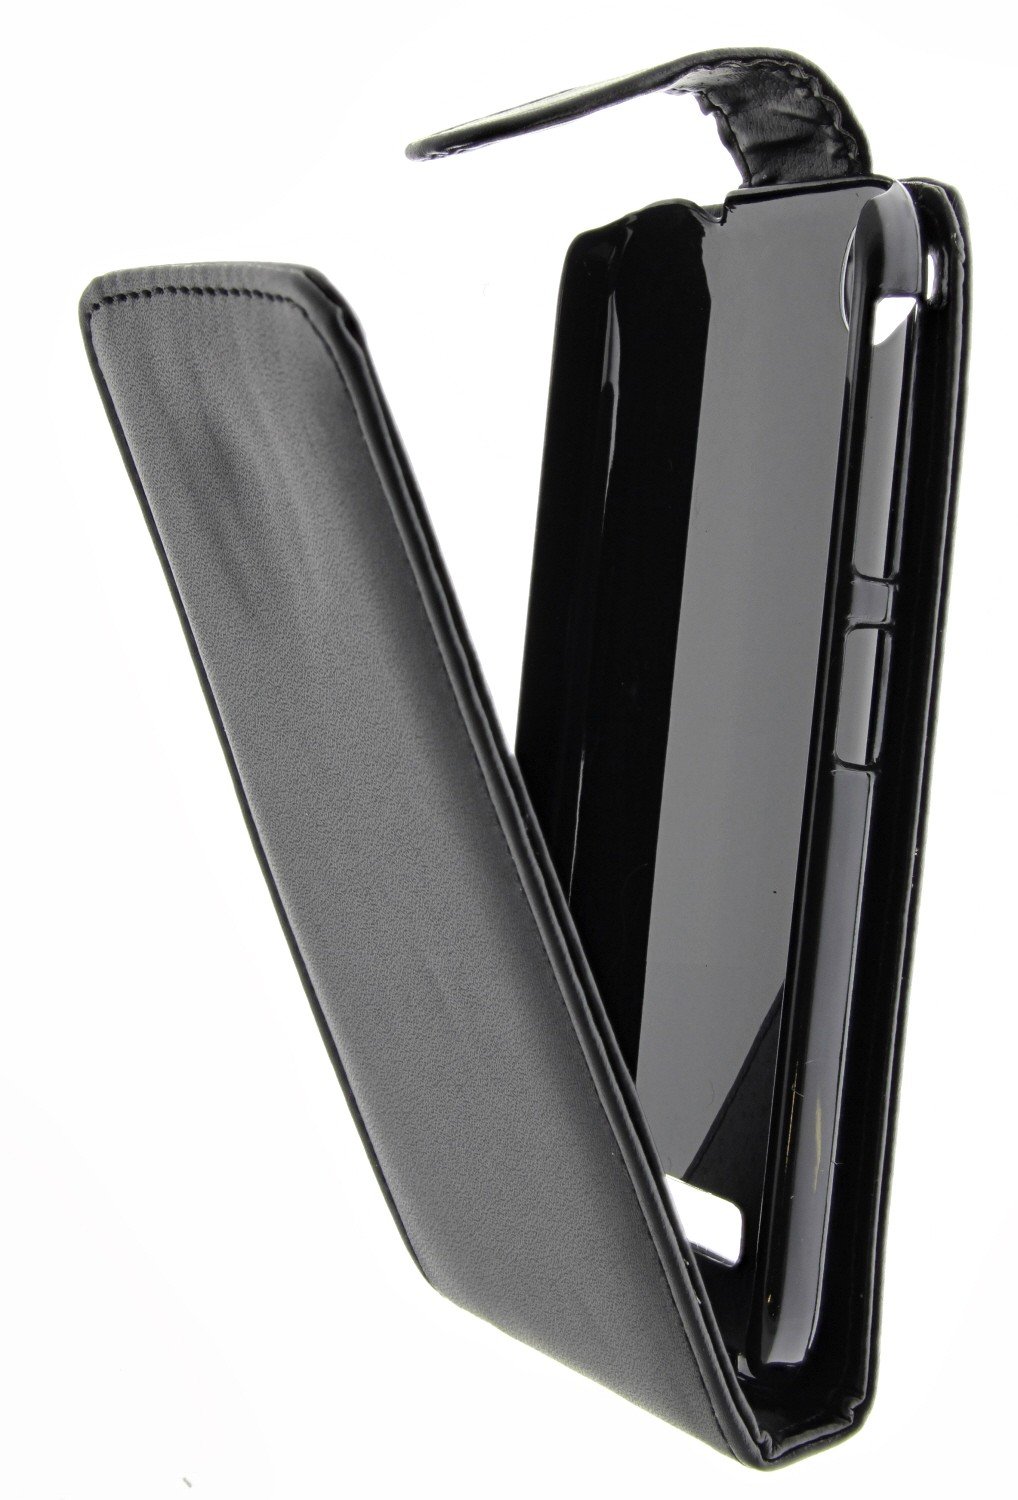 Beschikbaar Moment dreigen Hoesje HTC Desire 320 flip case zwart | MobileSupplies.nl